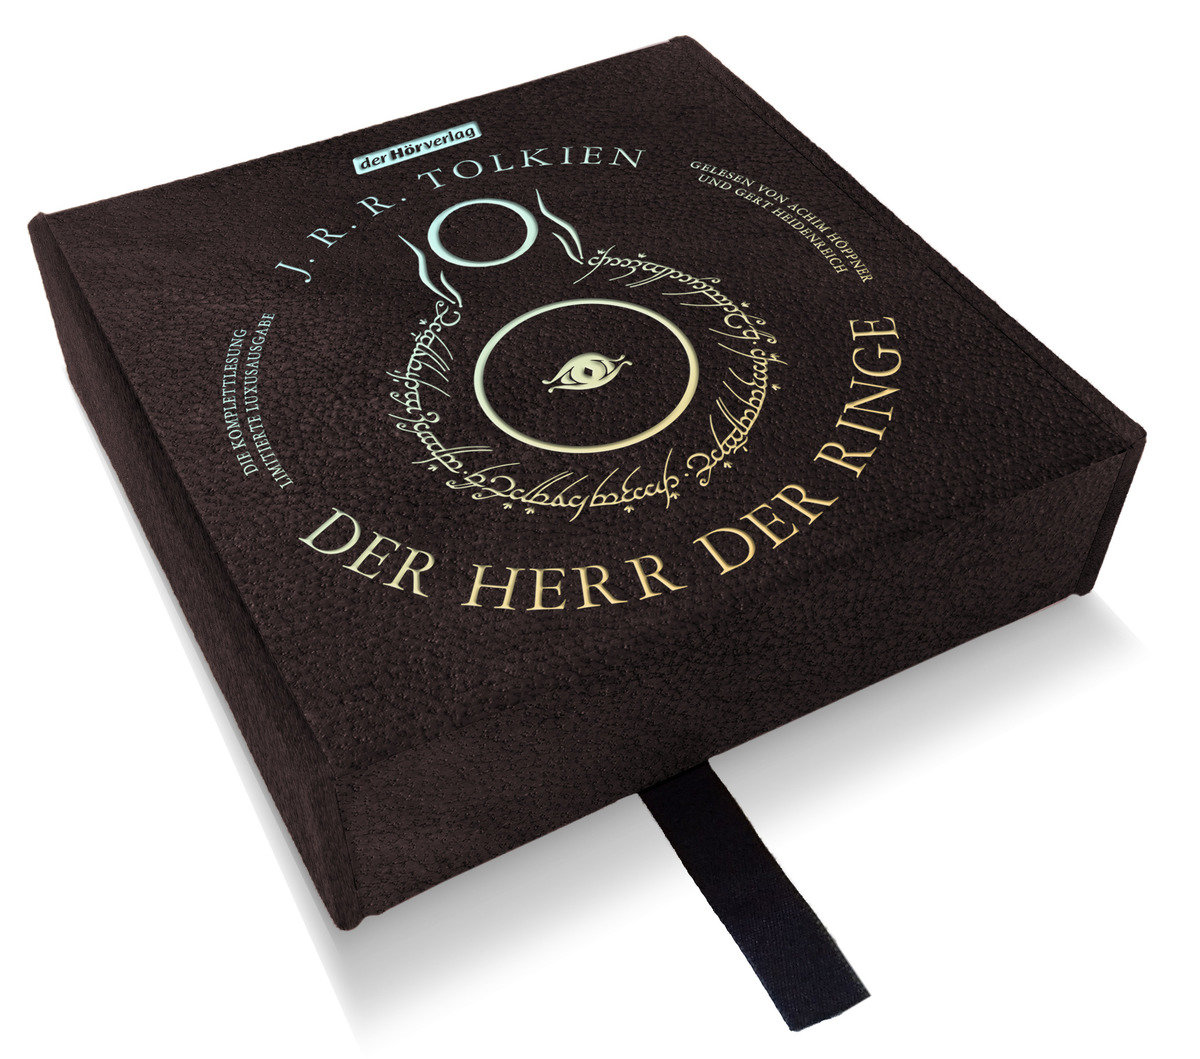 Herr der Ringe Hörbuch von der Hörverlag Unterhaltung Bücher Romane & Dichtung Science Fiction & Fantasy 